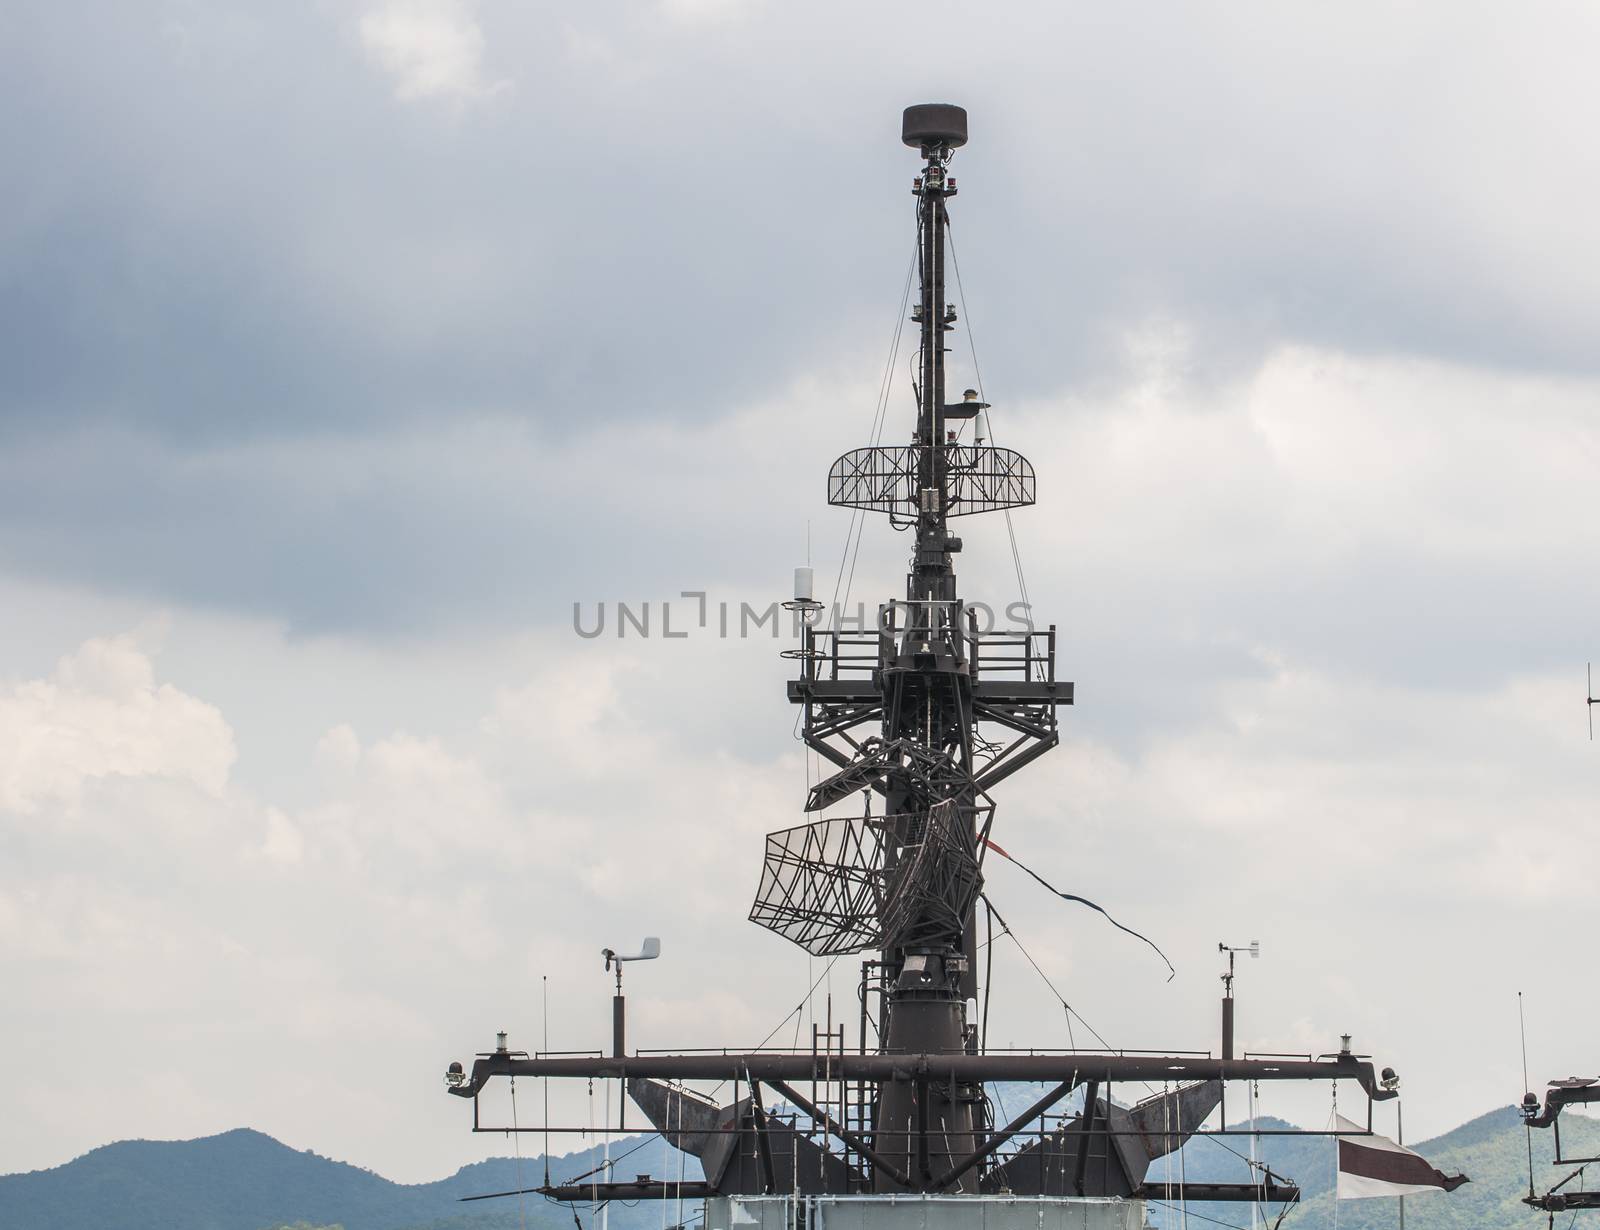 Detail of antenna on warship by Sorapop